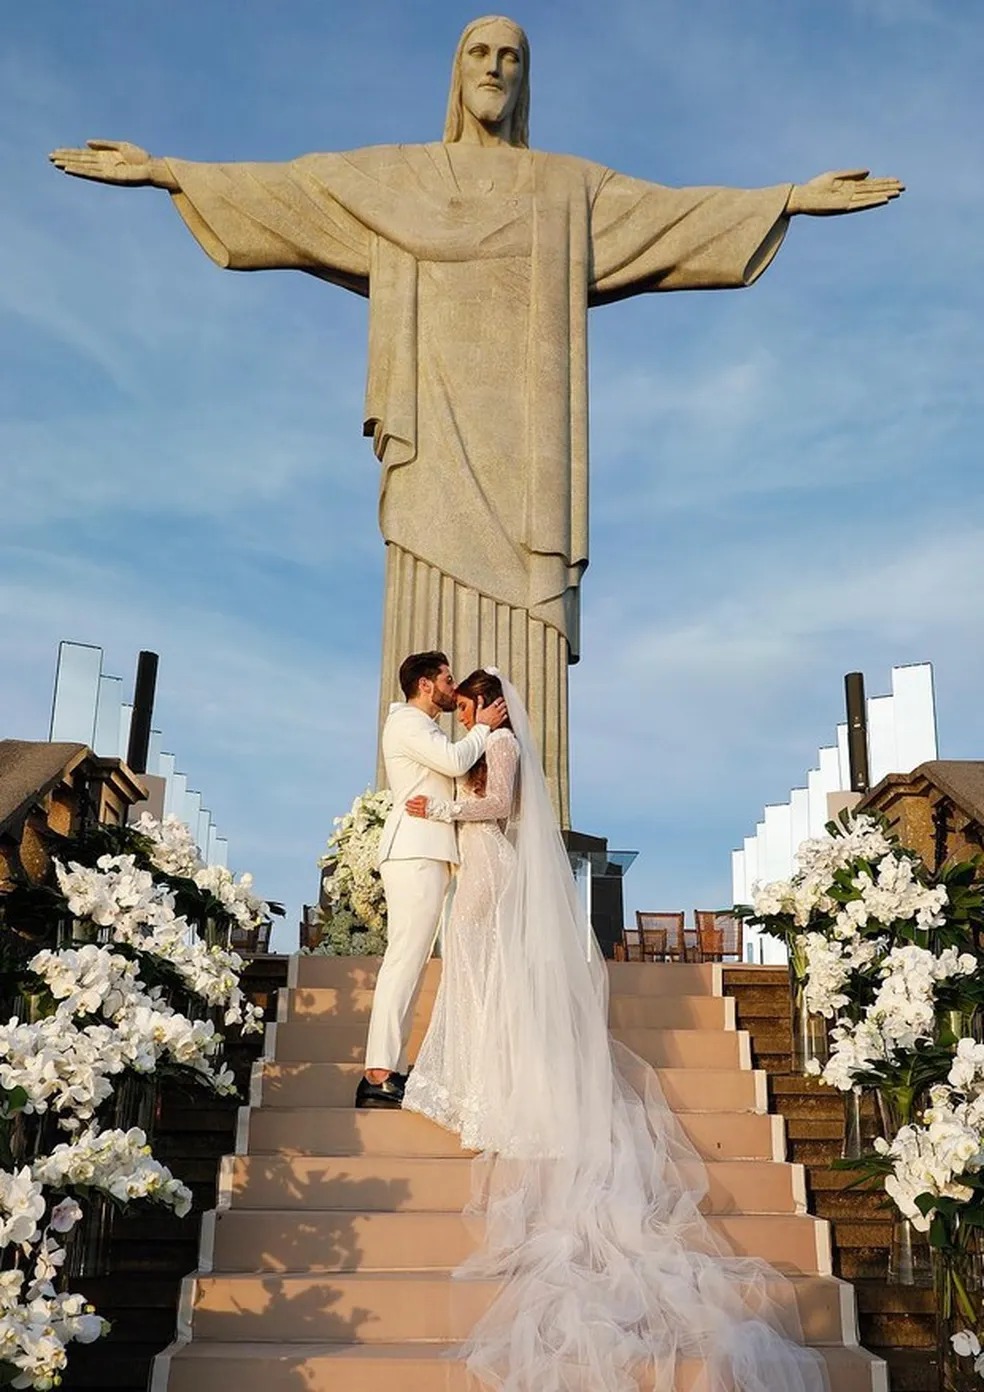 Casamento Alok e Romana no Cristo Redentor | reprodução: Internet